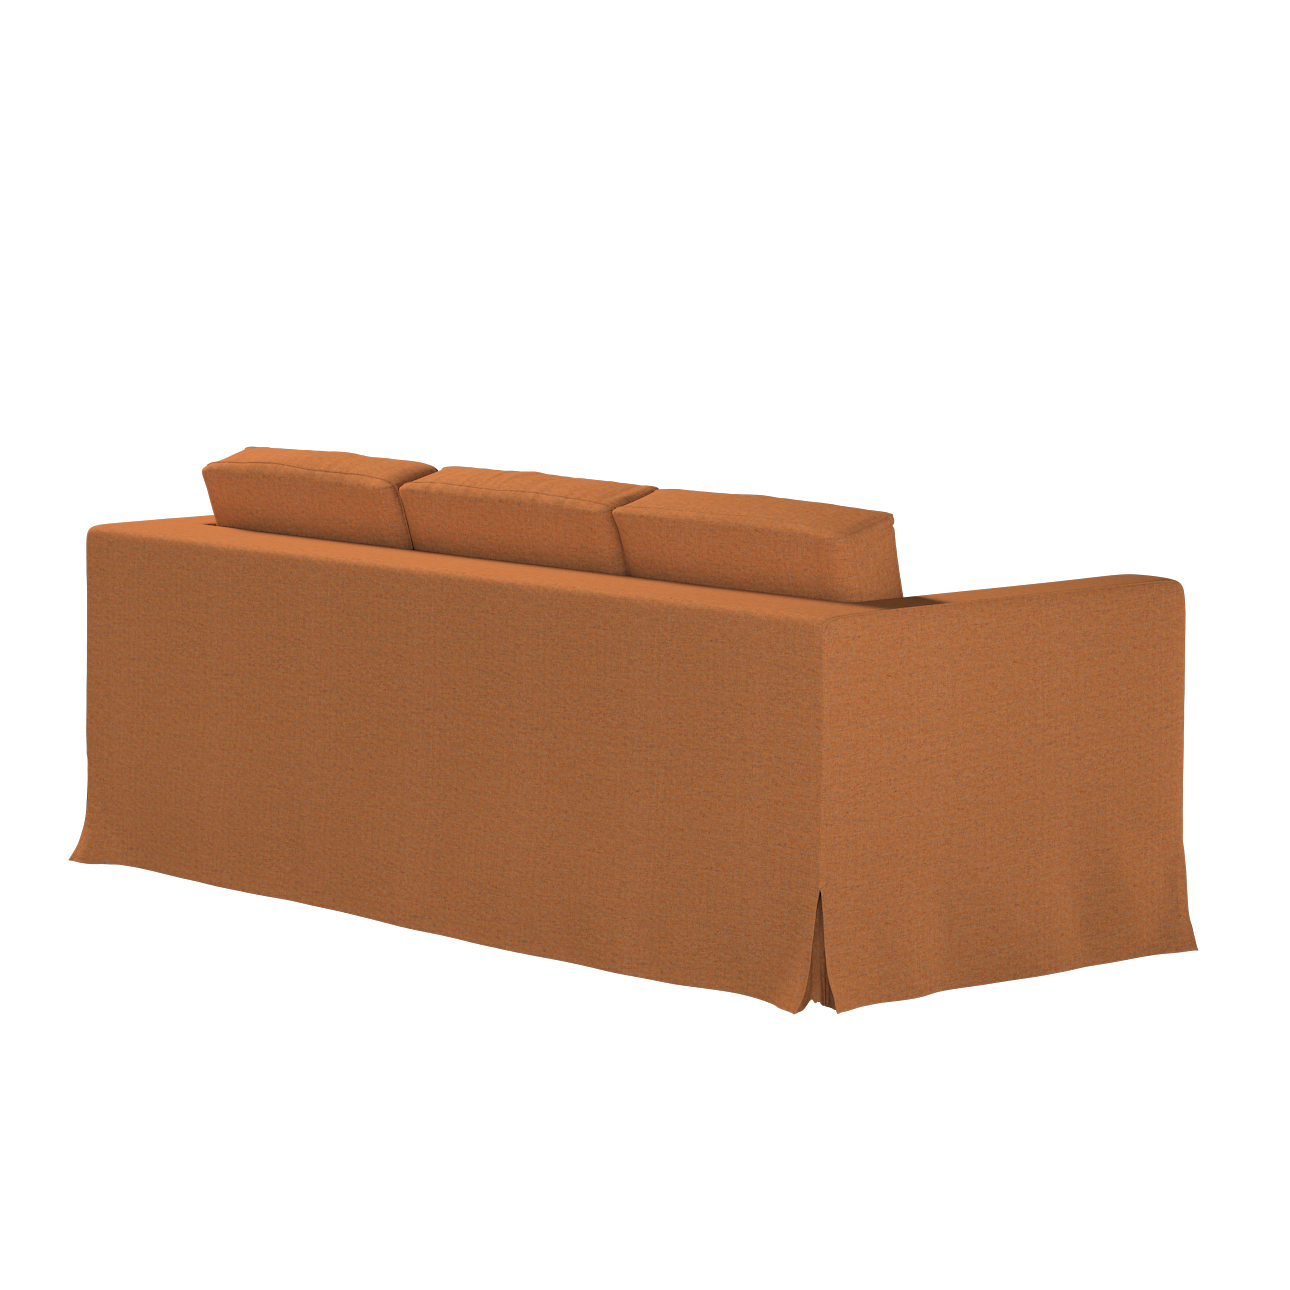 Bezug für Karlanda 3-Sitzer Sofa nicht ausklappbar, lang, orange, Bezug für günstig online kaufen